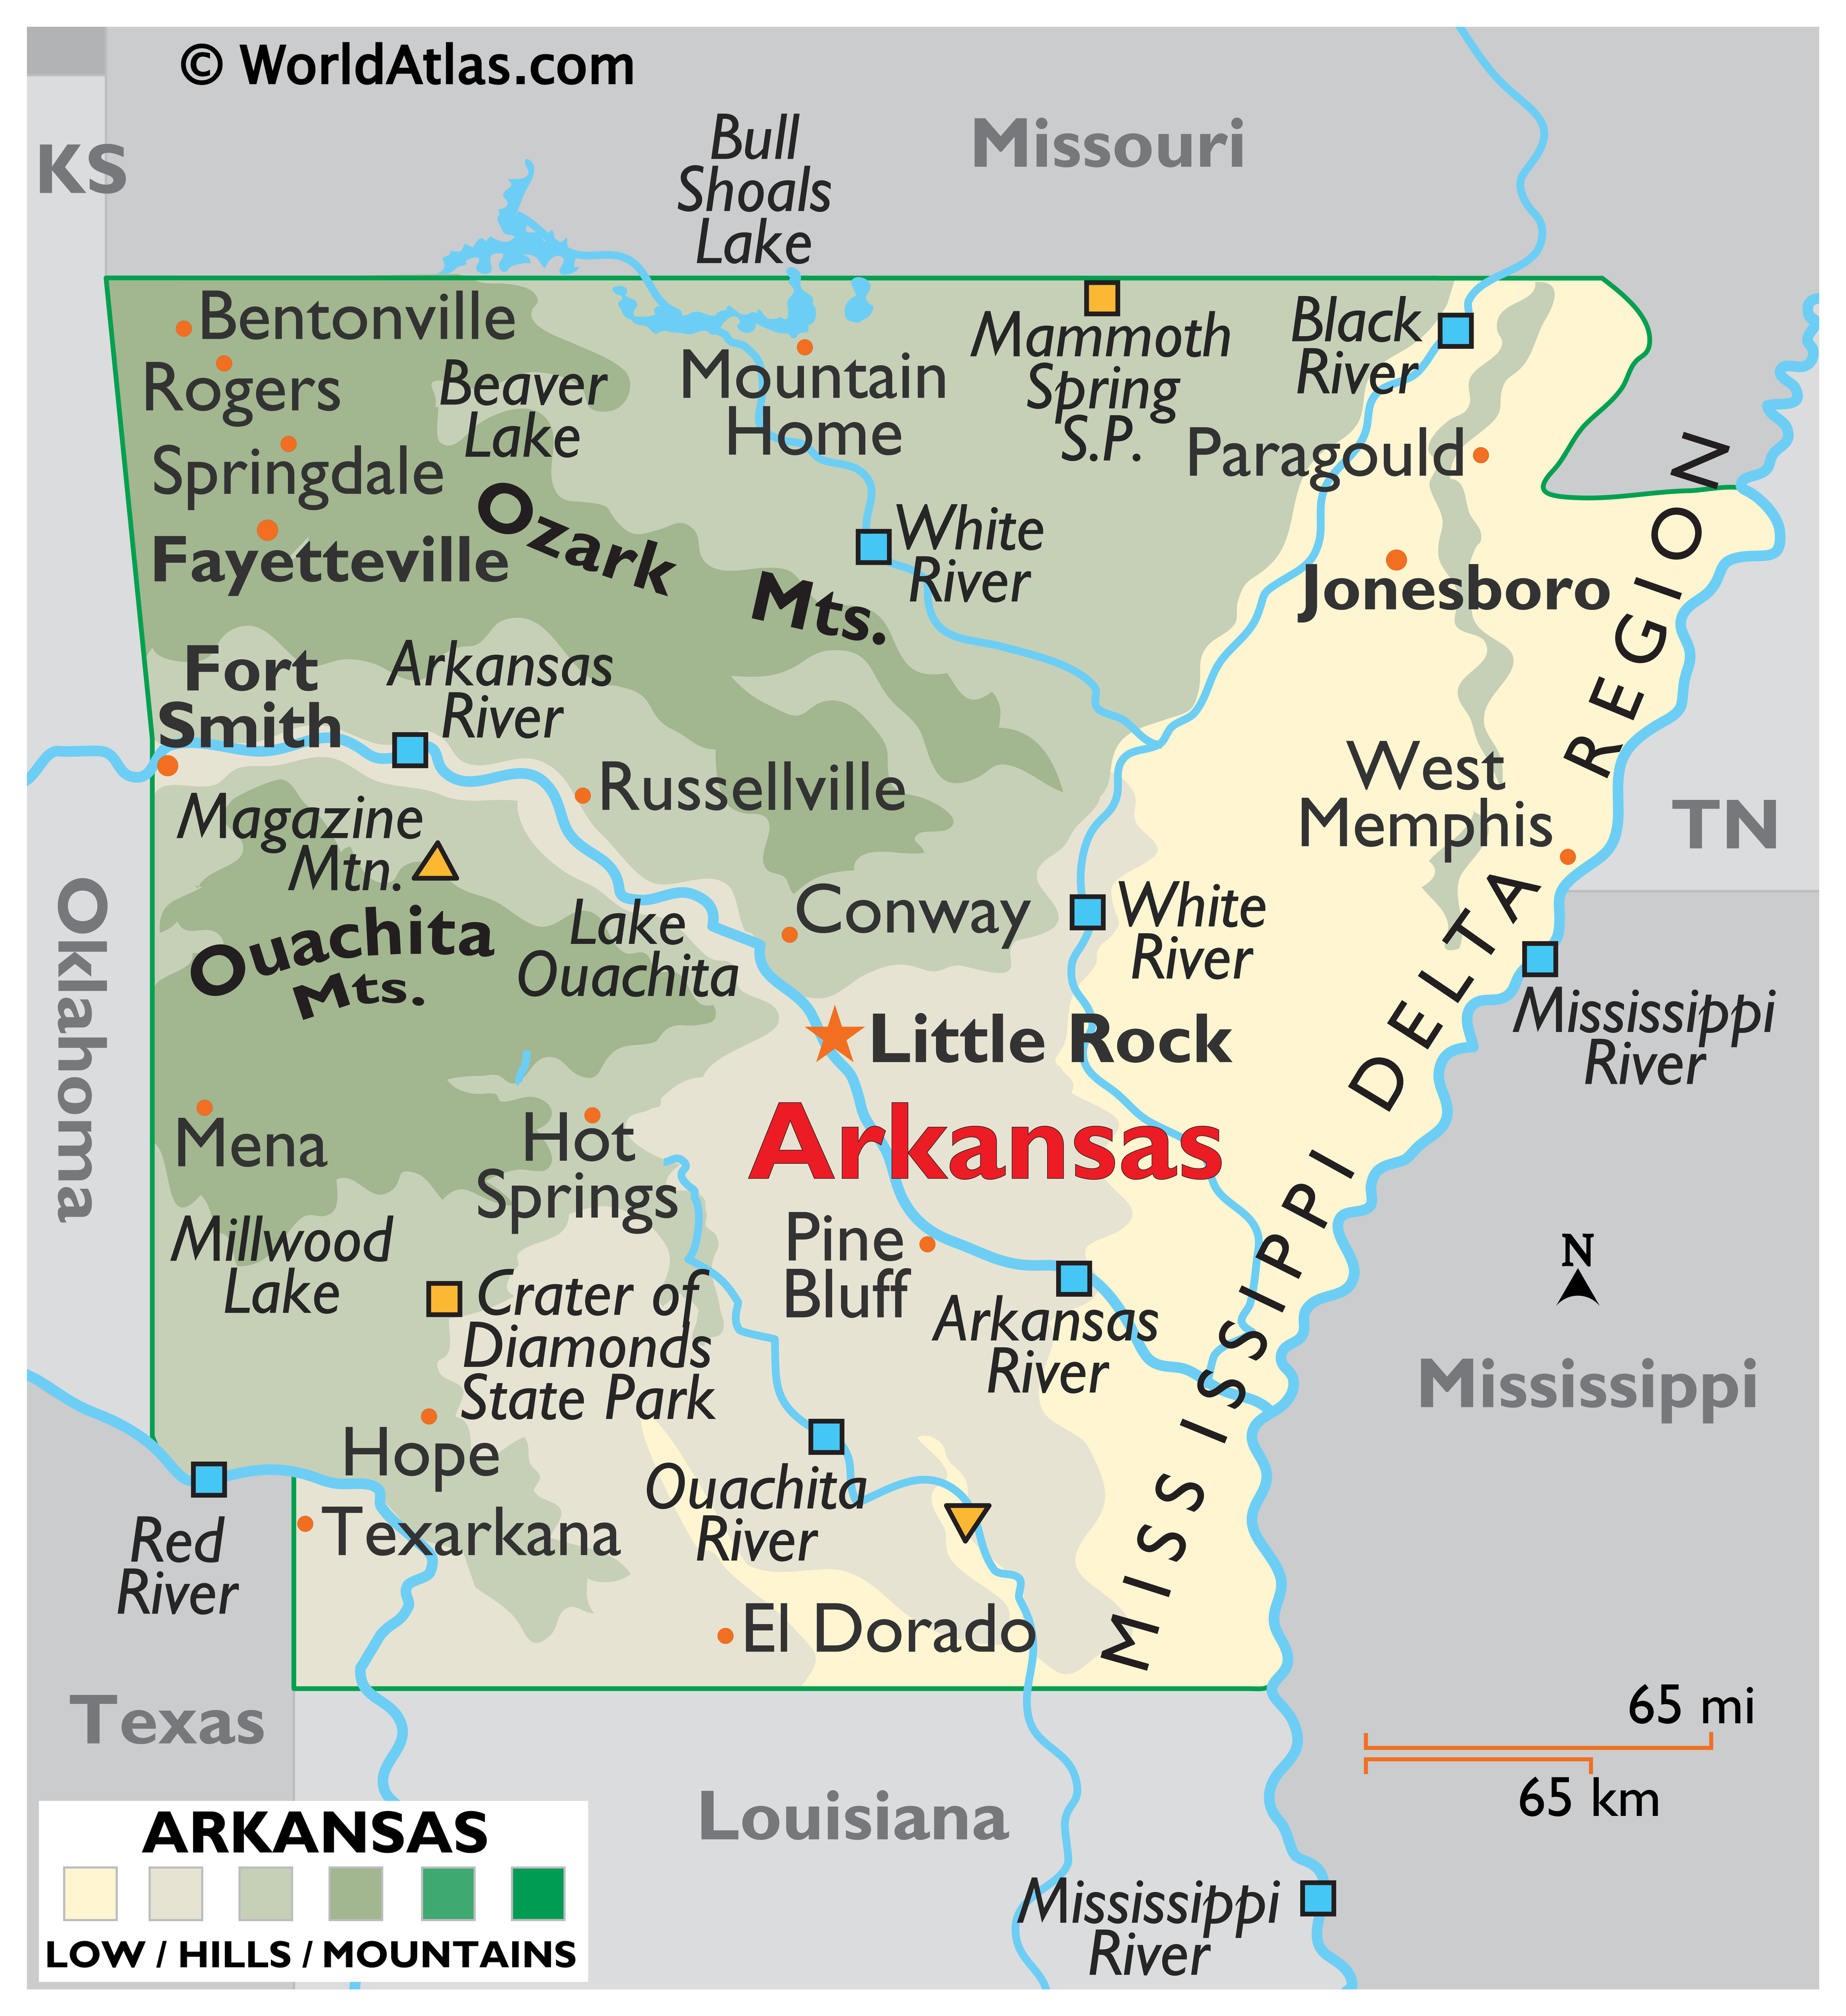 Arkansas Flag and Description and Arkansas Seal